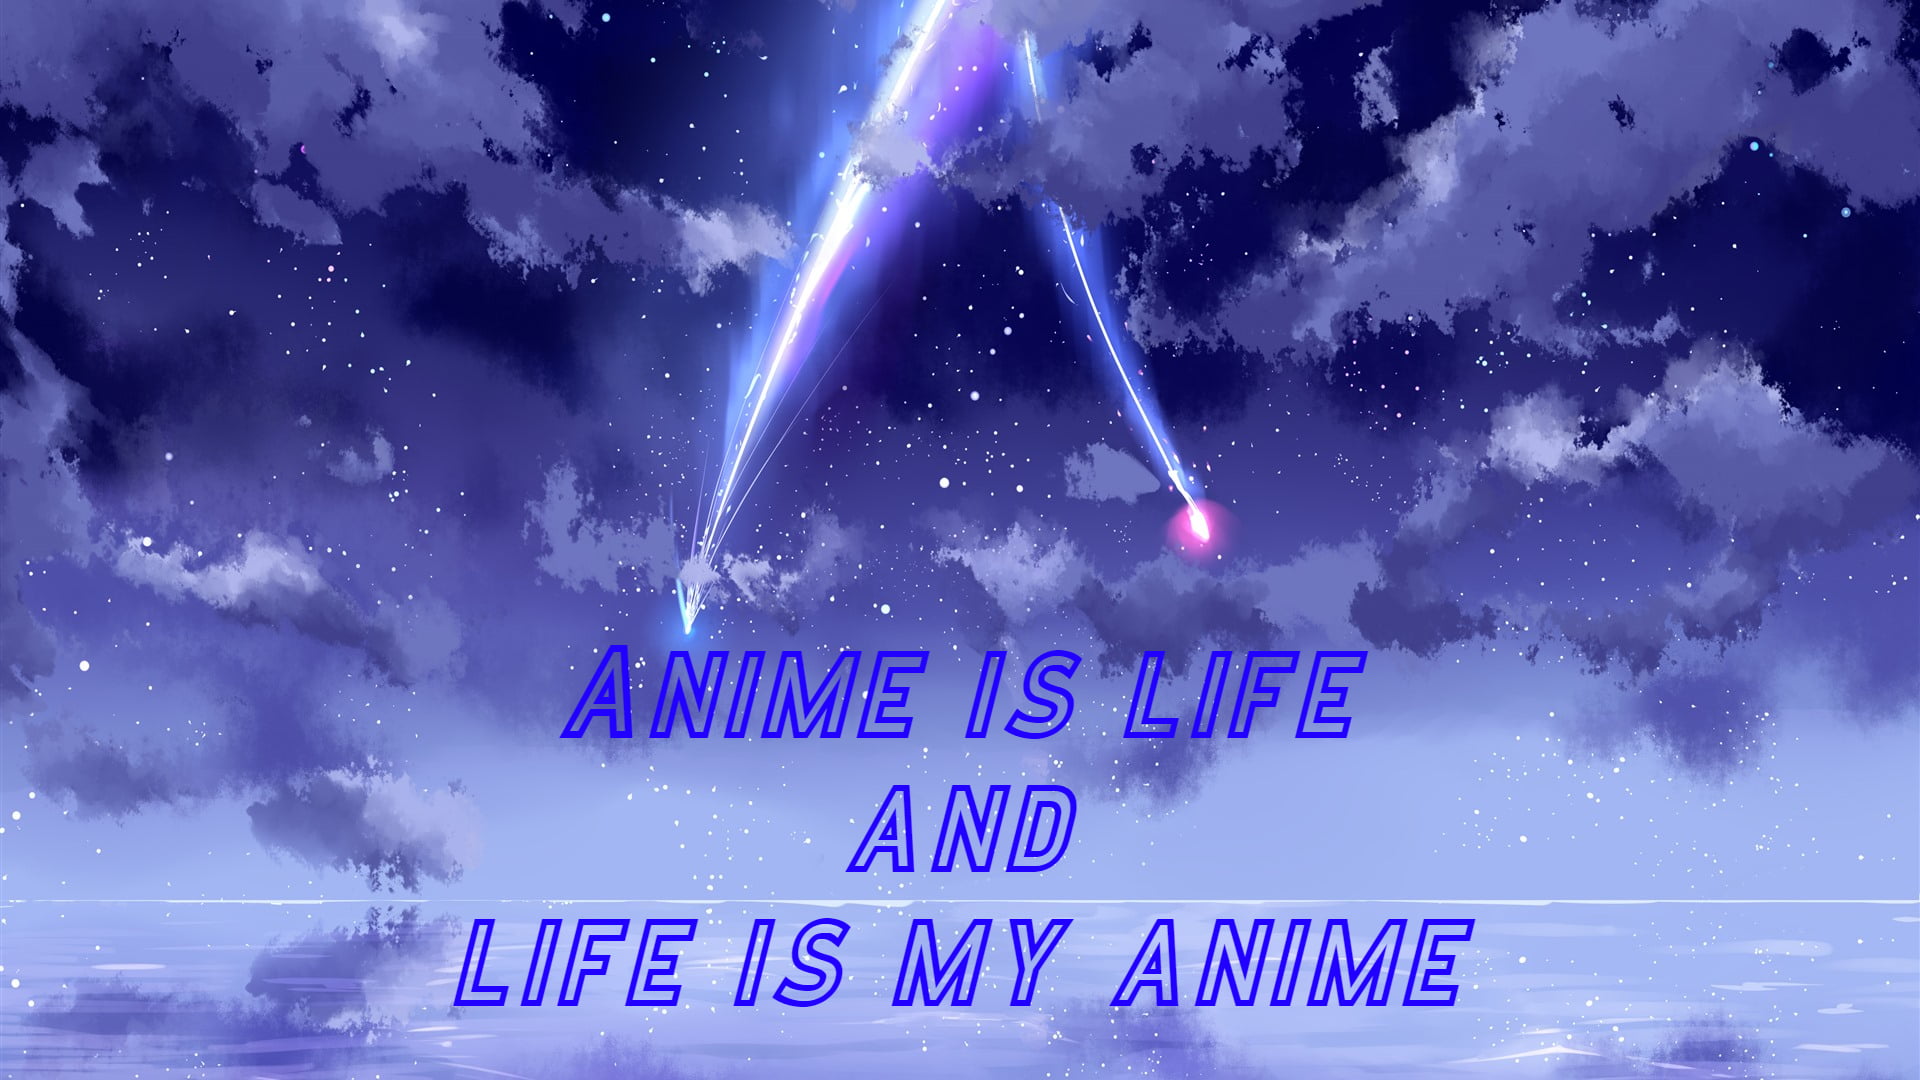 My name, Anime